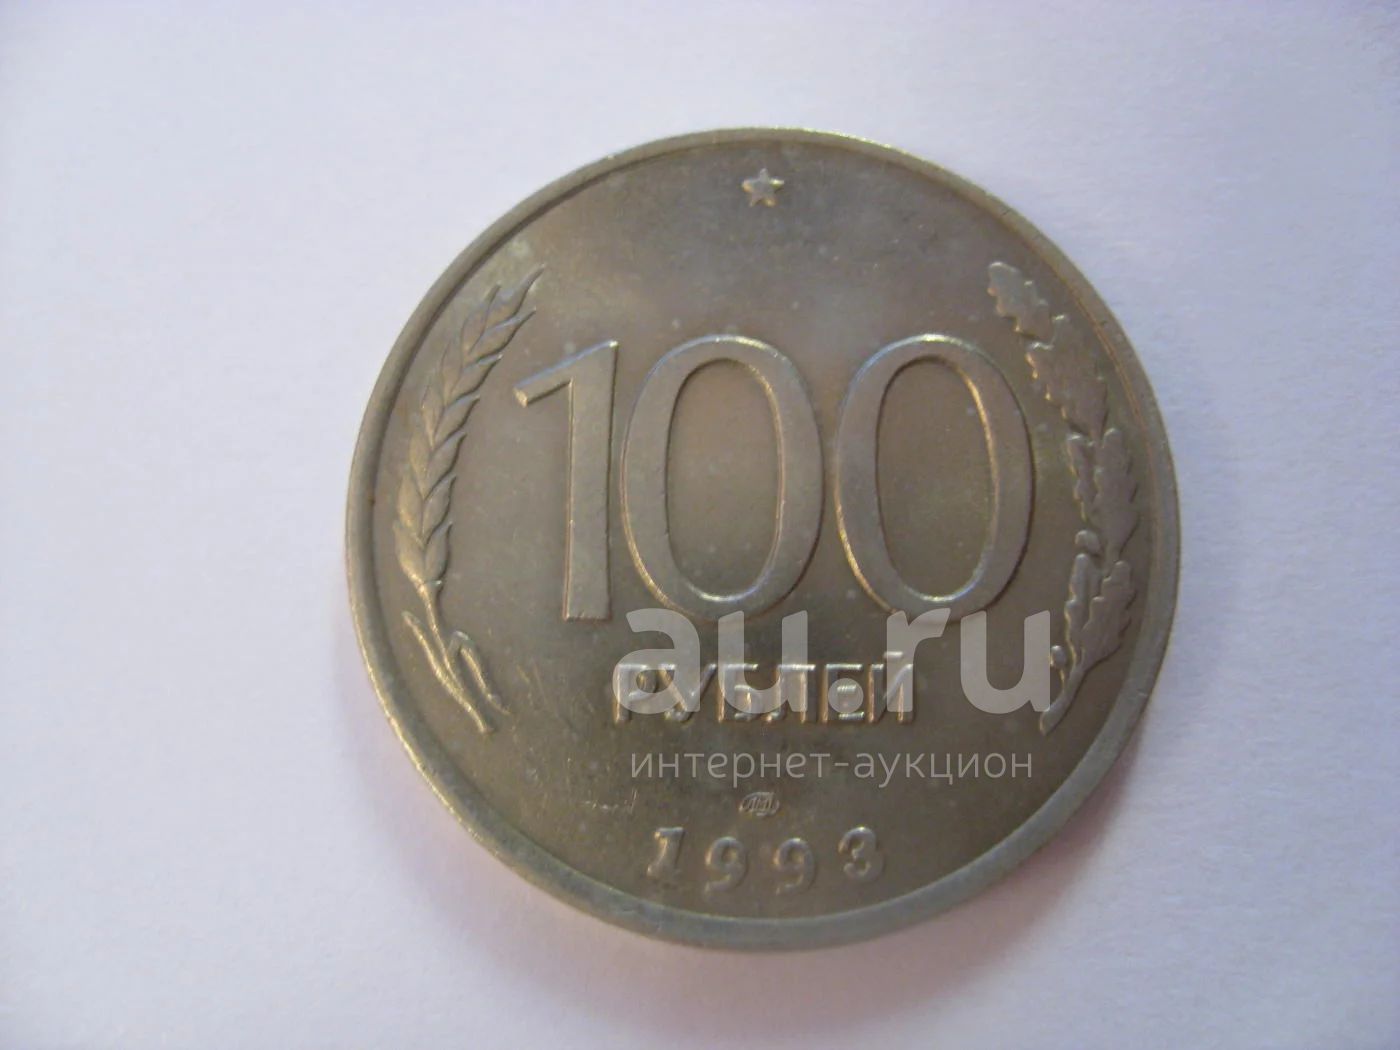 Продам рубли россии. Л на кружке 5 ти рублёвой монеты 1992г. 81 Копейка в рублях в дробях.